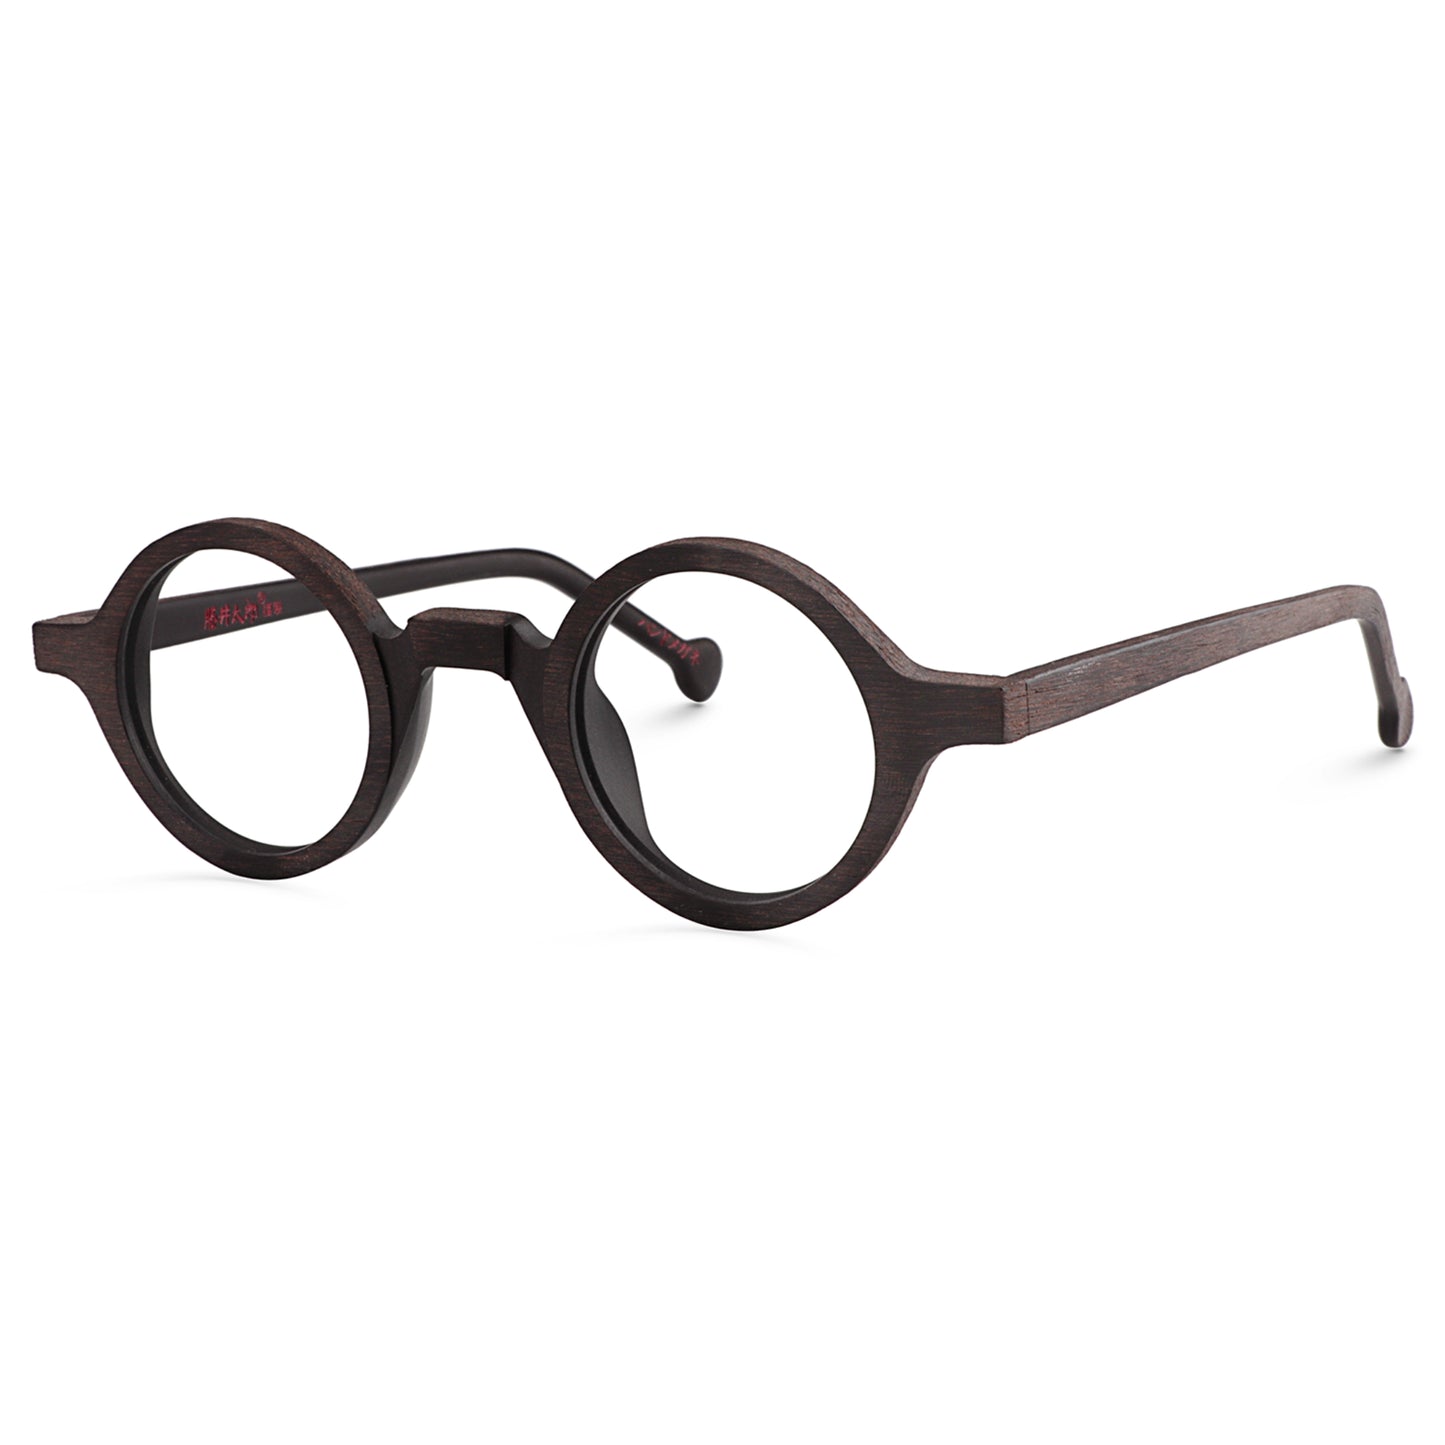 Harry - Blue Light Glasses Optin Store